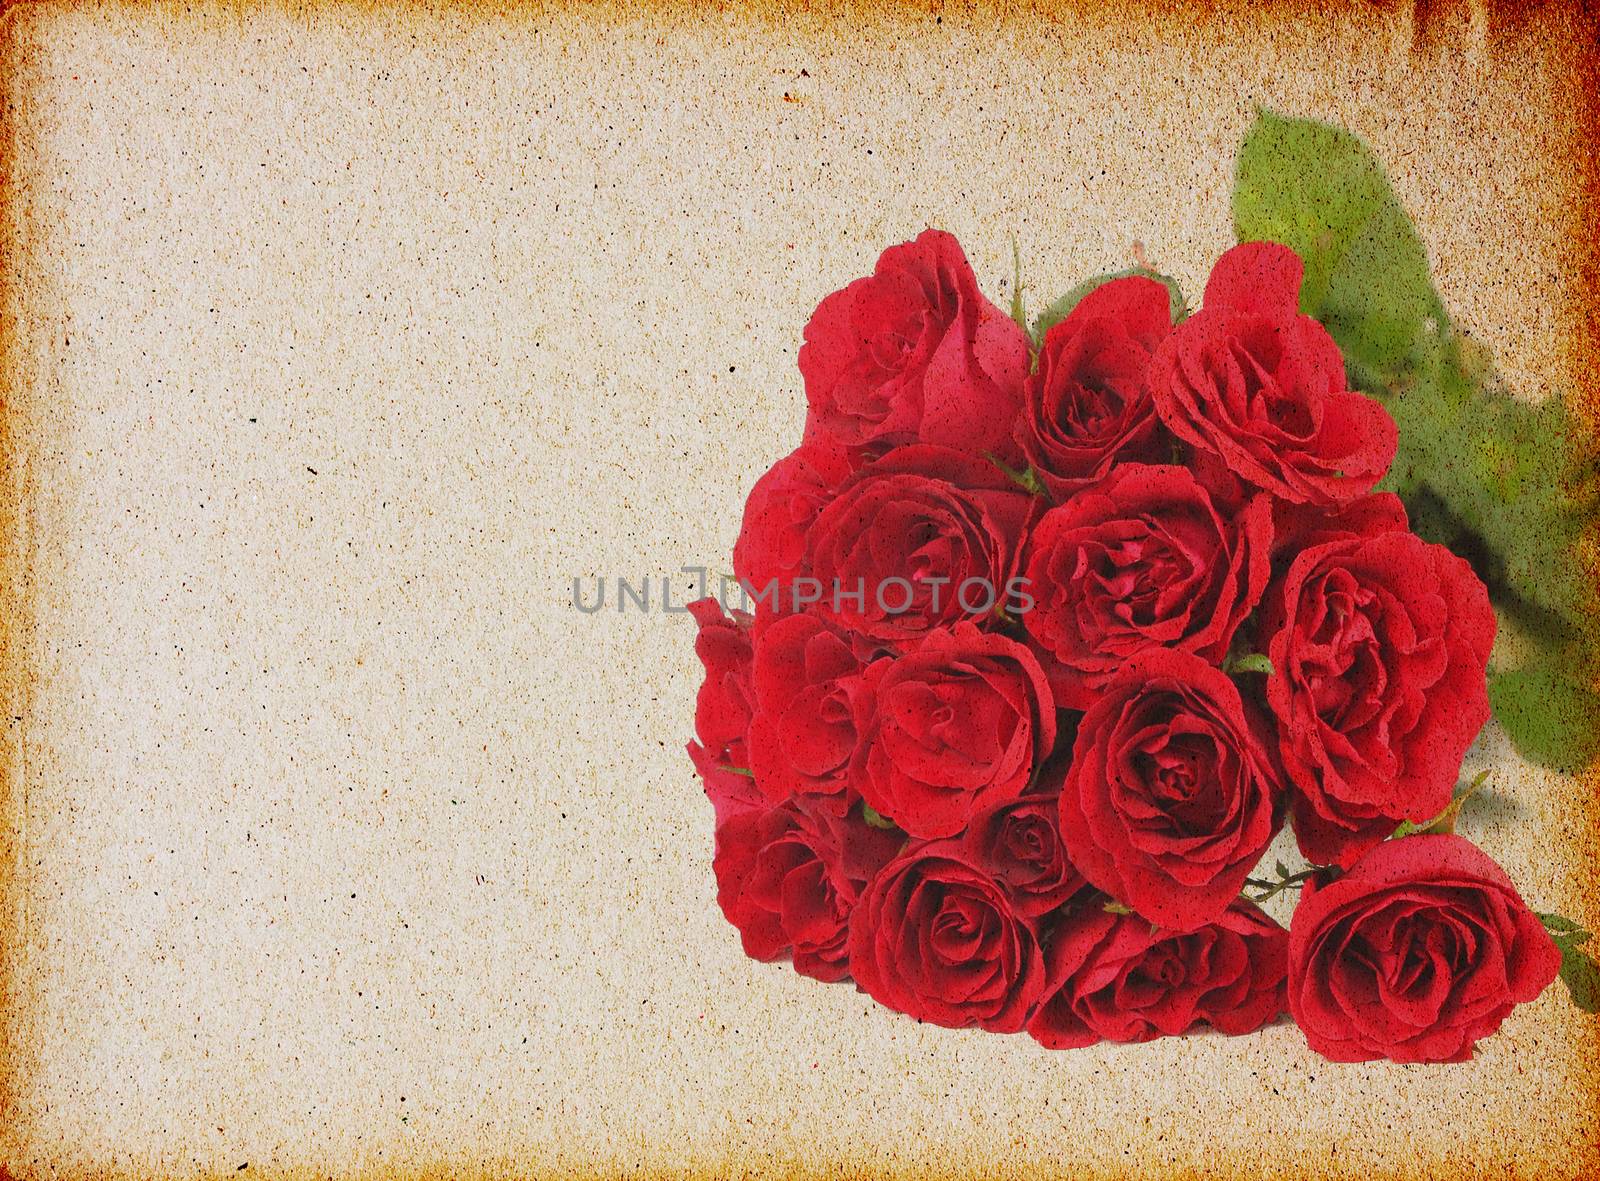 Vintage rose by wyoosumran